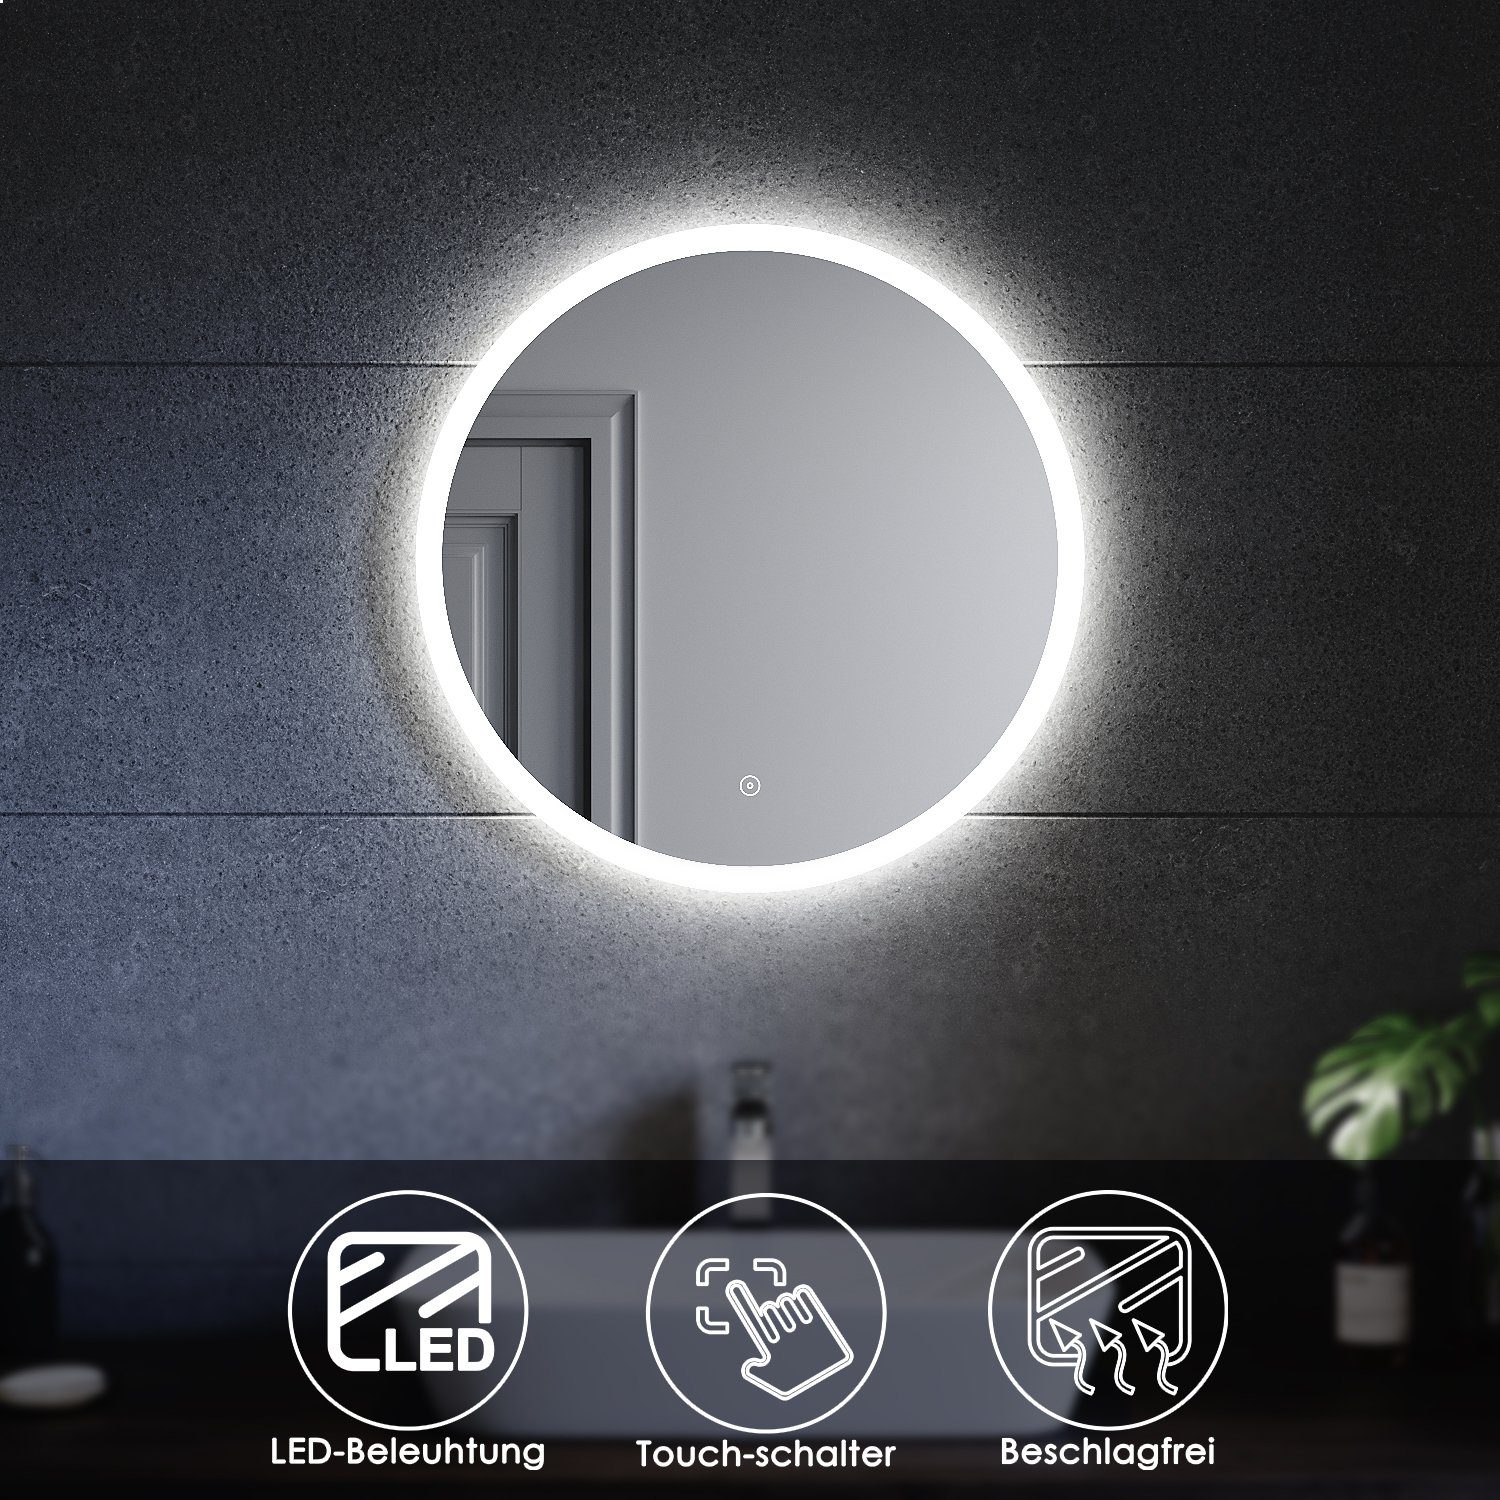 SONNI Зеркало для ванной комнаты Rund Badezimmerspiegel mit Beleuchtung, Ø 80 cm / Ø 60 cm, Beschlagfrei-Funktion, LED, Touchschalter, Energiesparend